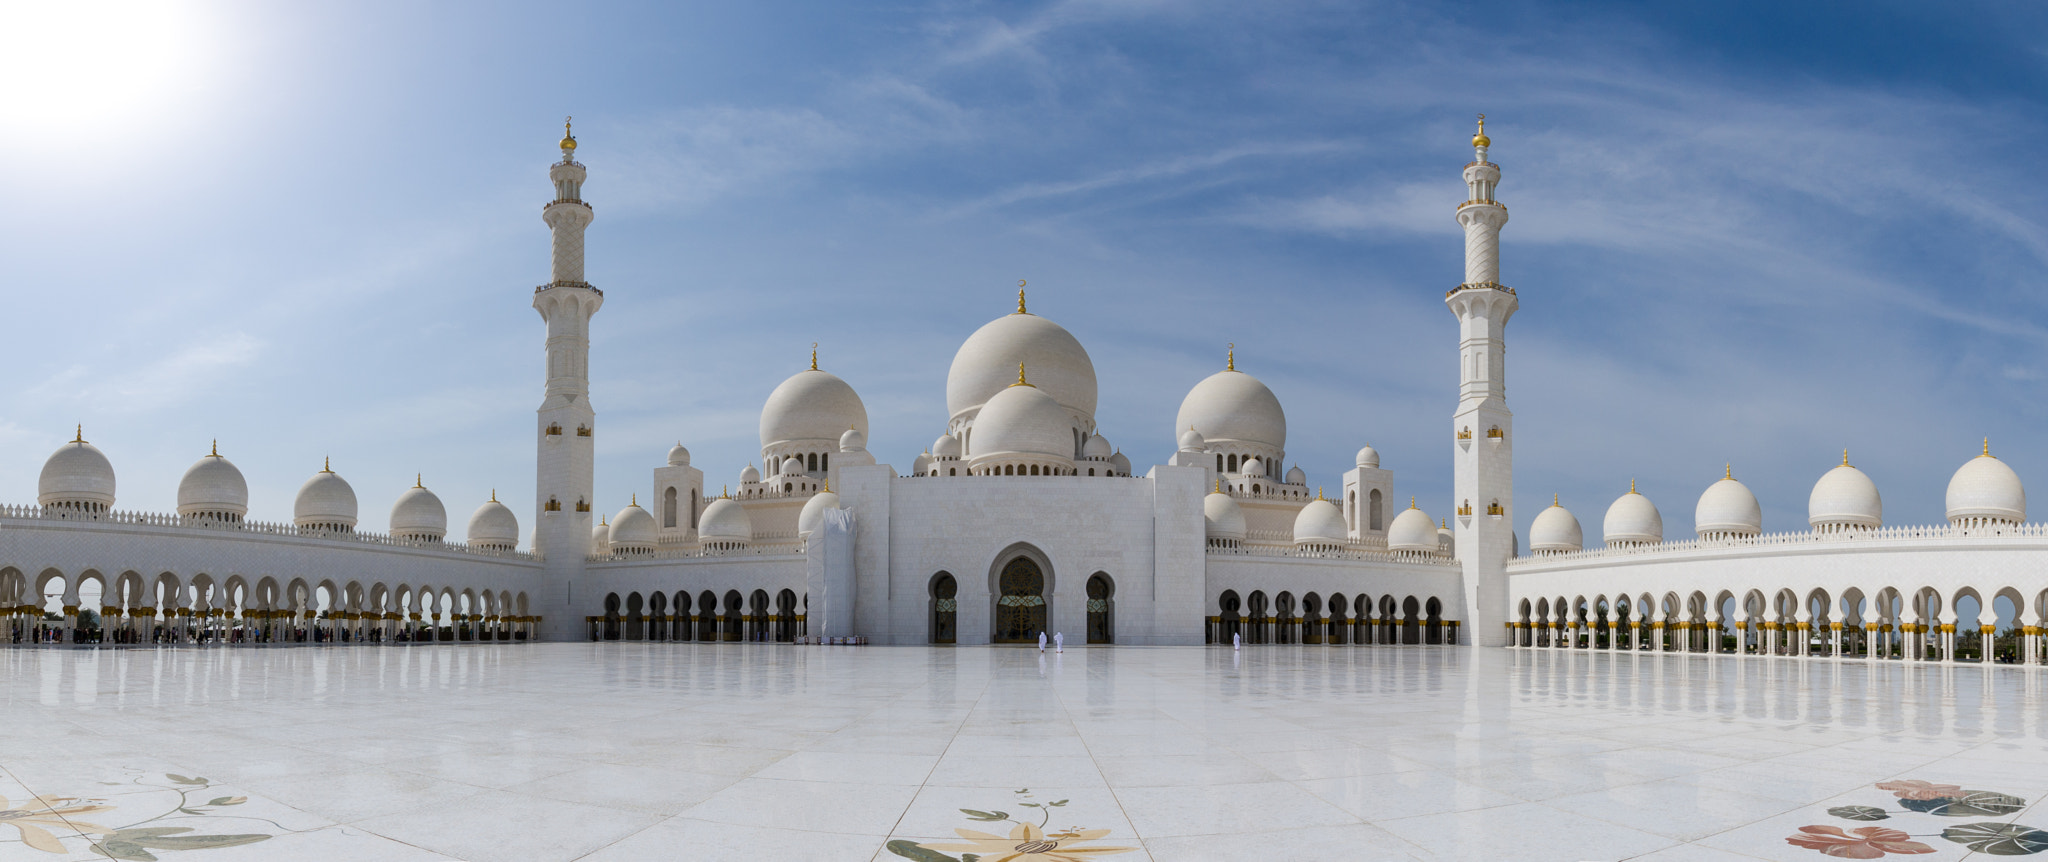 Nikon D7000 sample photo. Grand mosque panorama photography